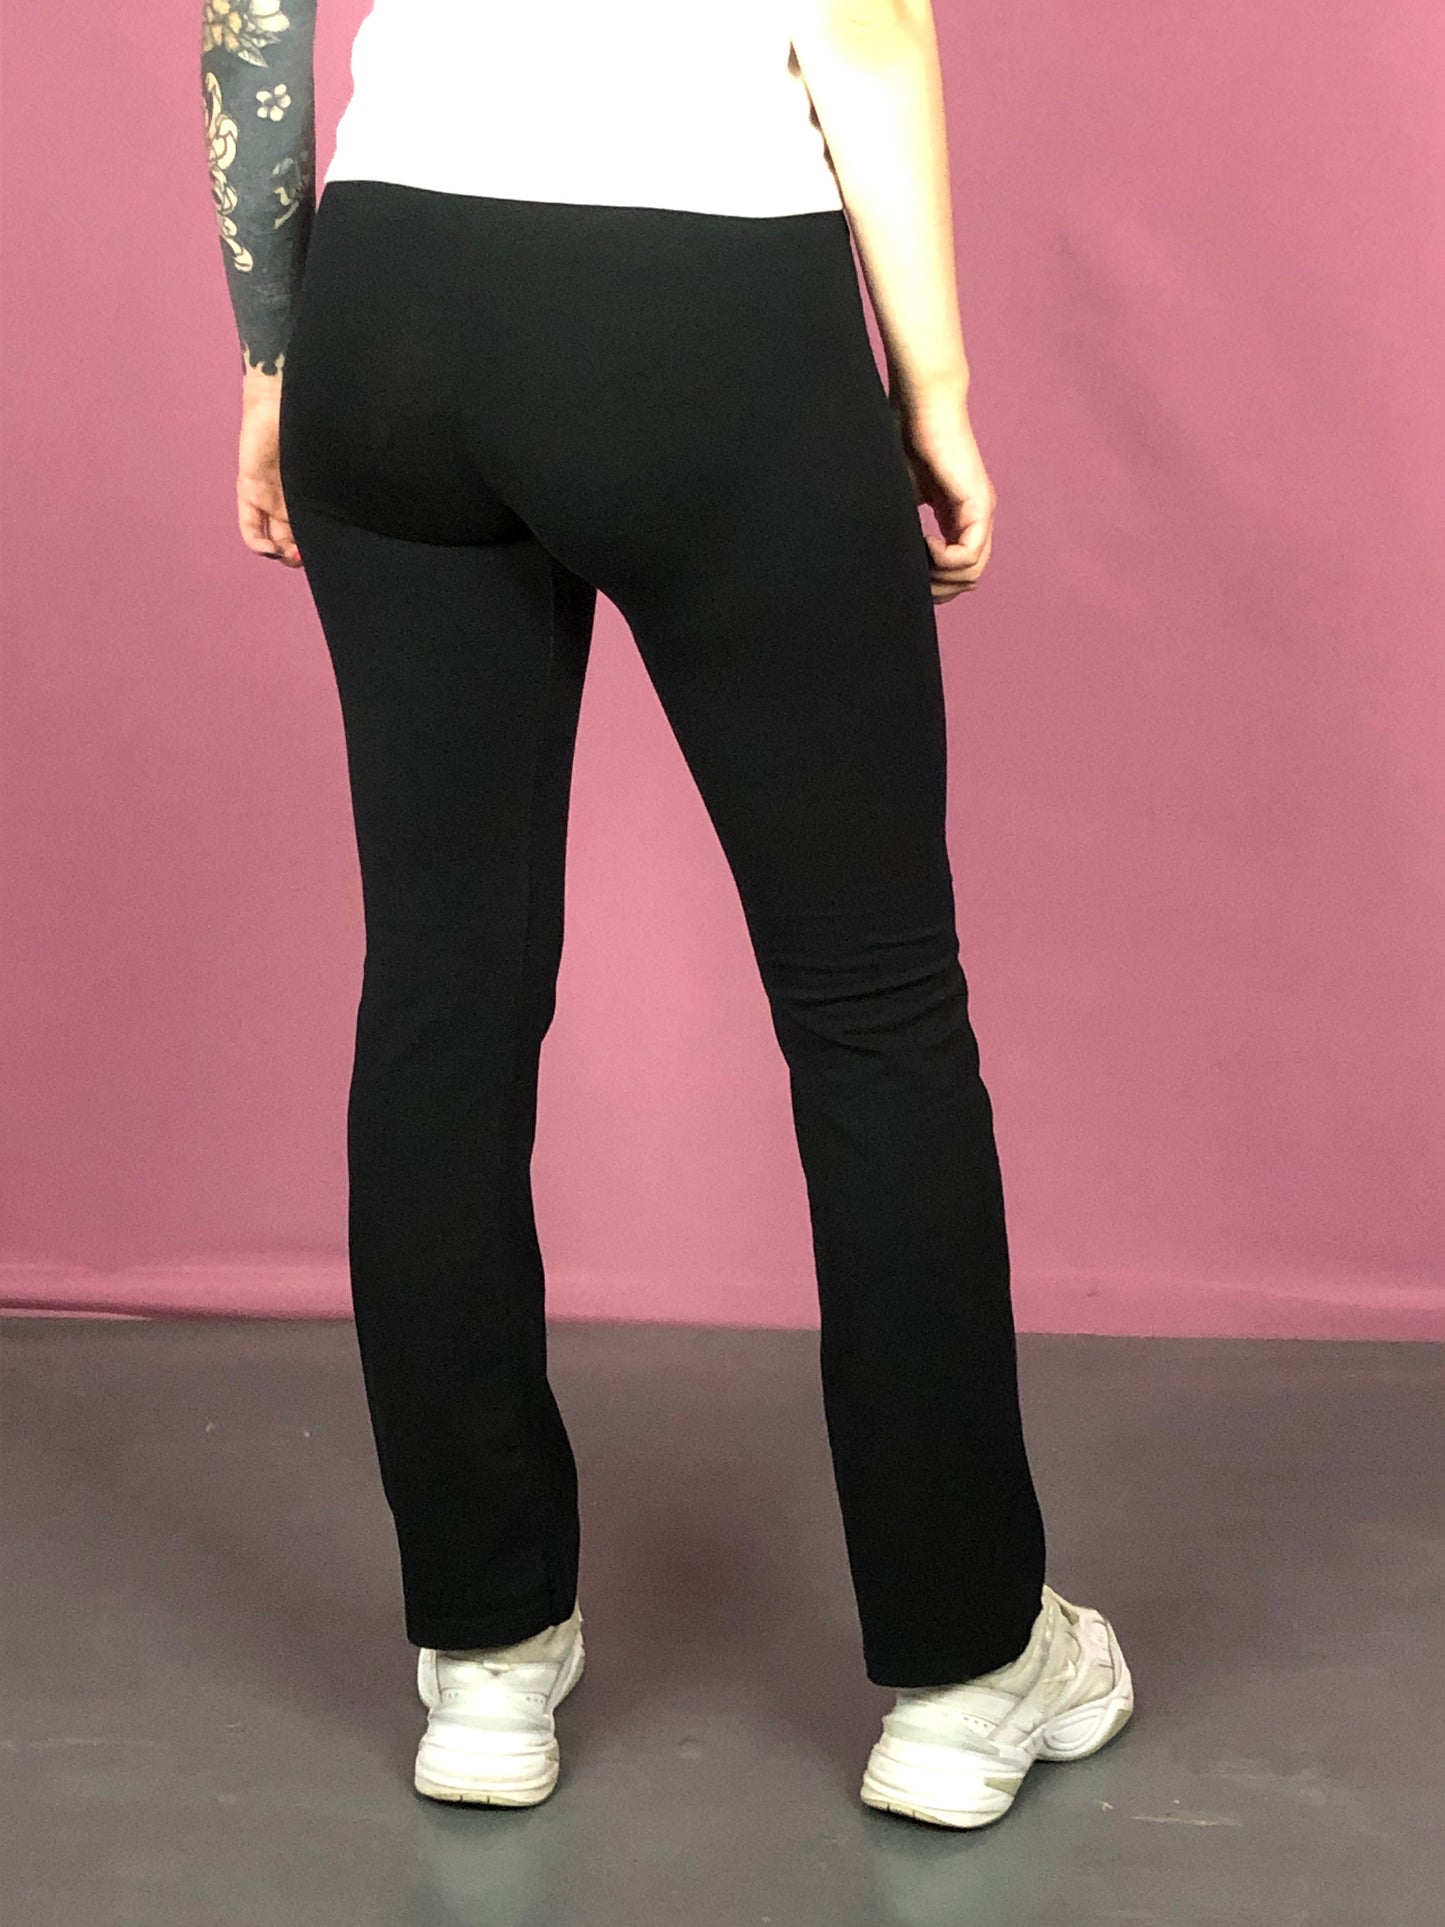 90s Nike Vintage Women's Leggings - XL Black Polyester Blend